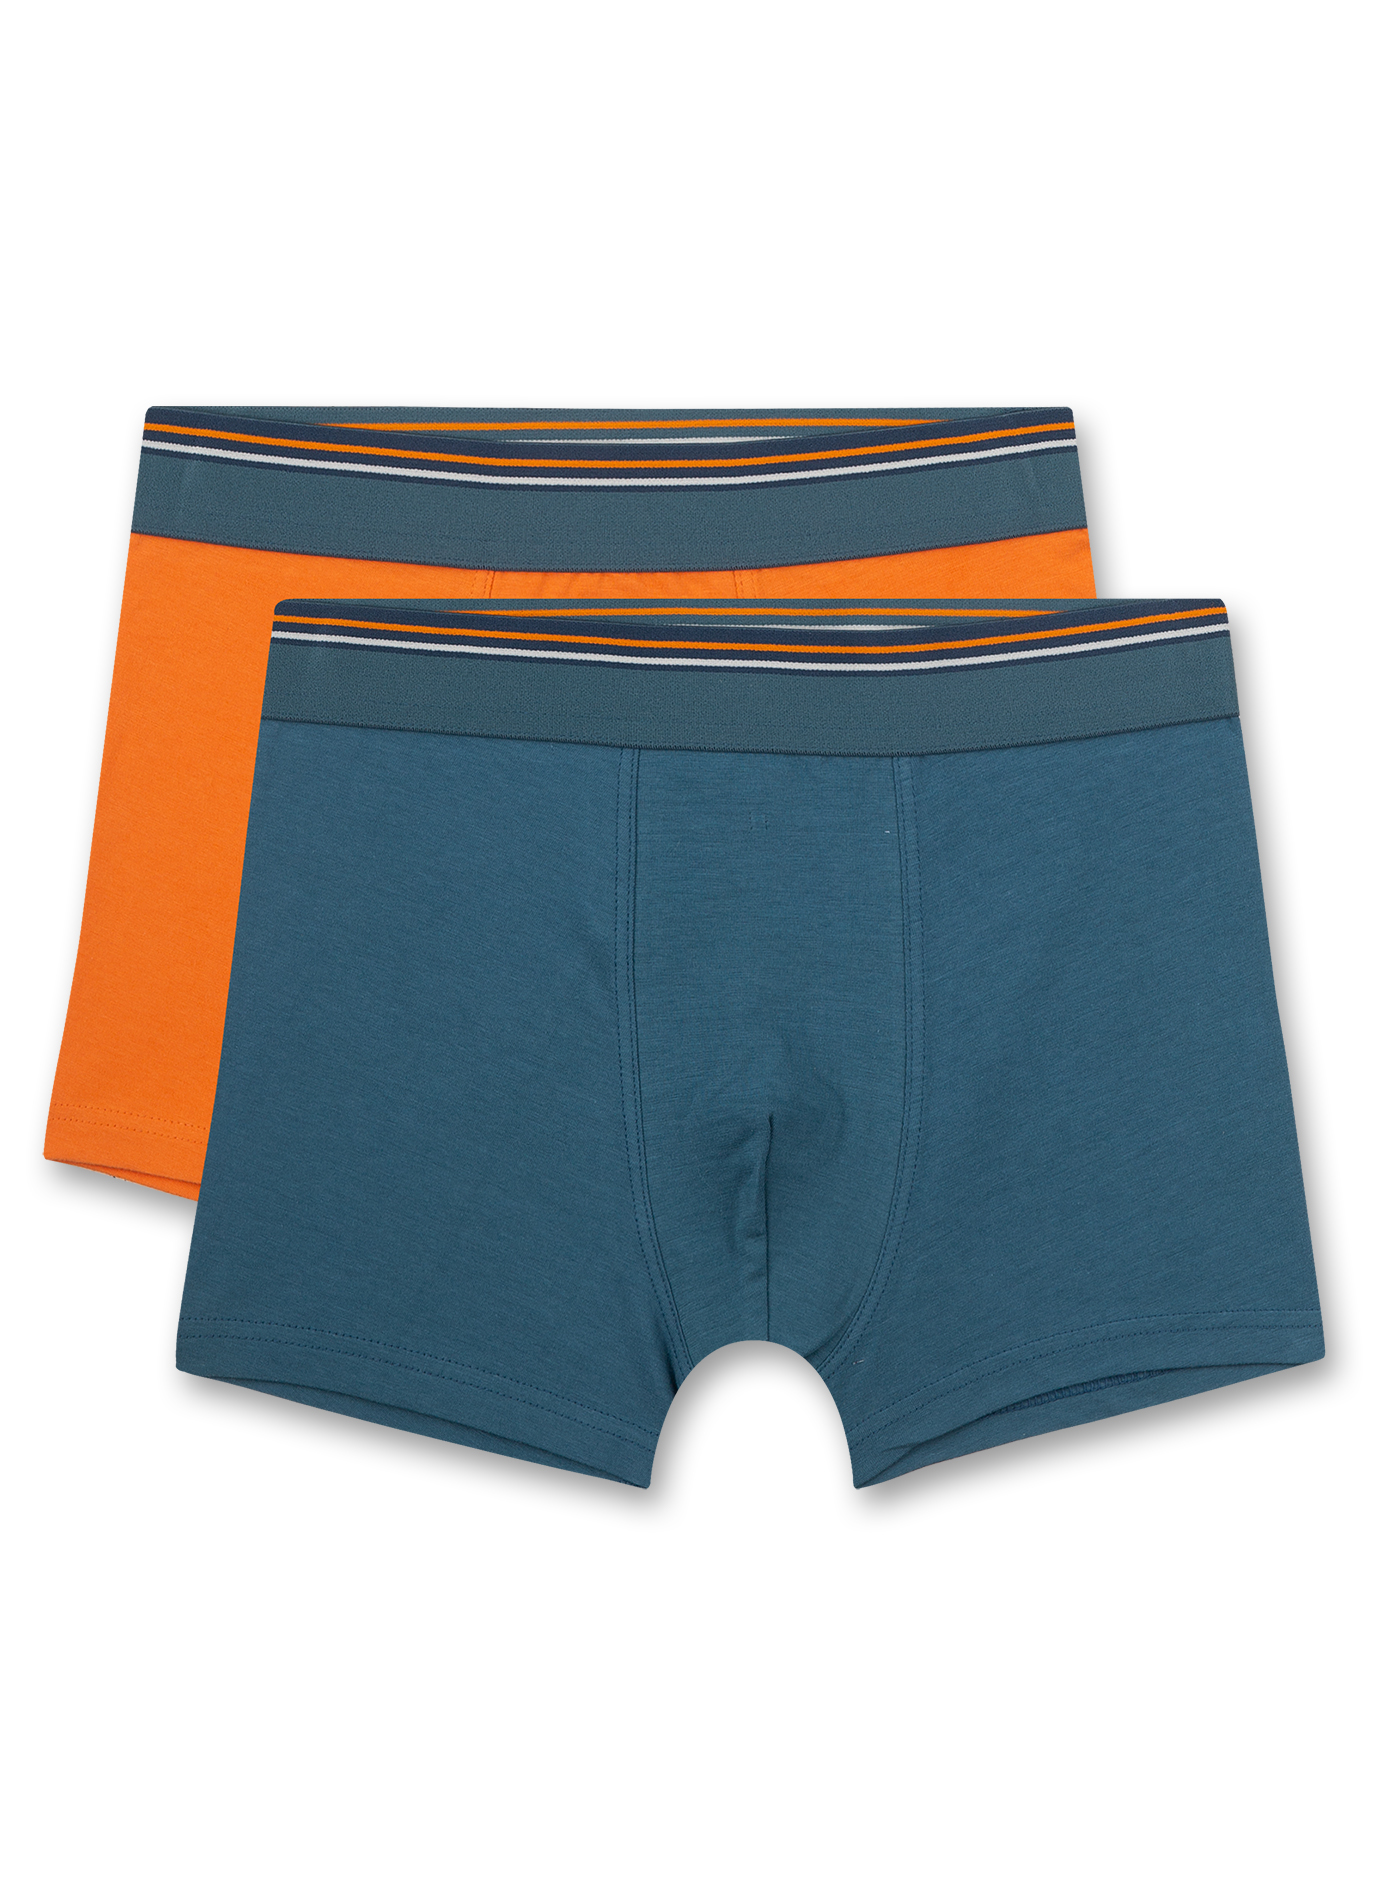 Jungen-Hipshorts (Doppelpack) Blau und Orange